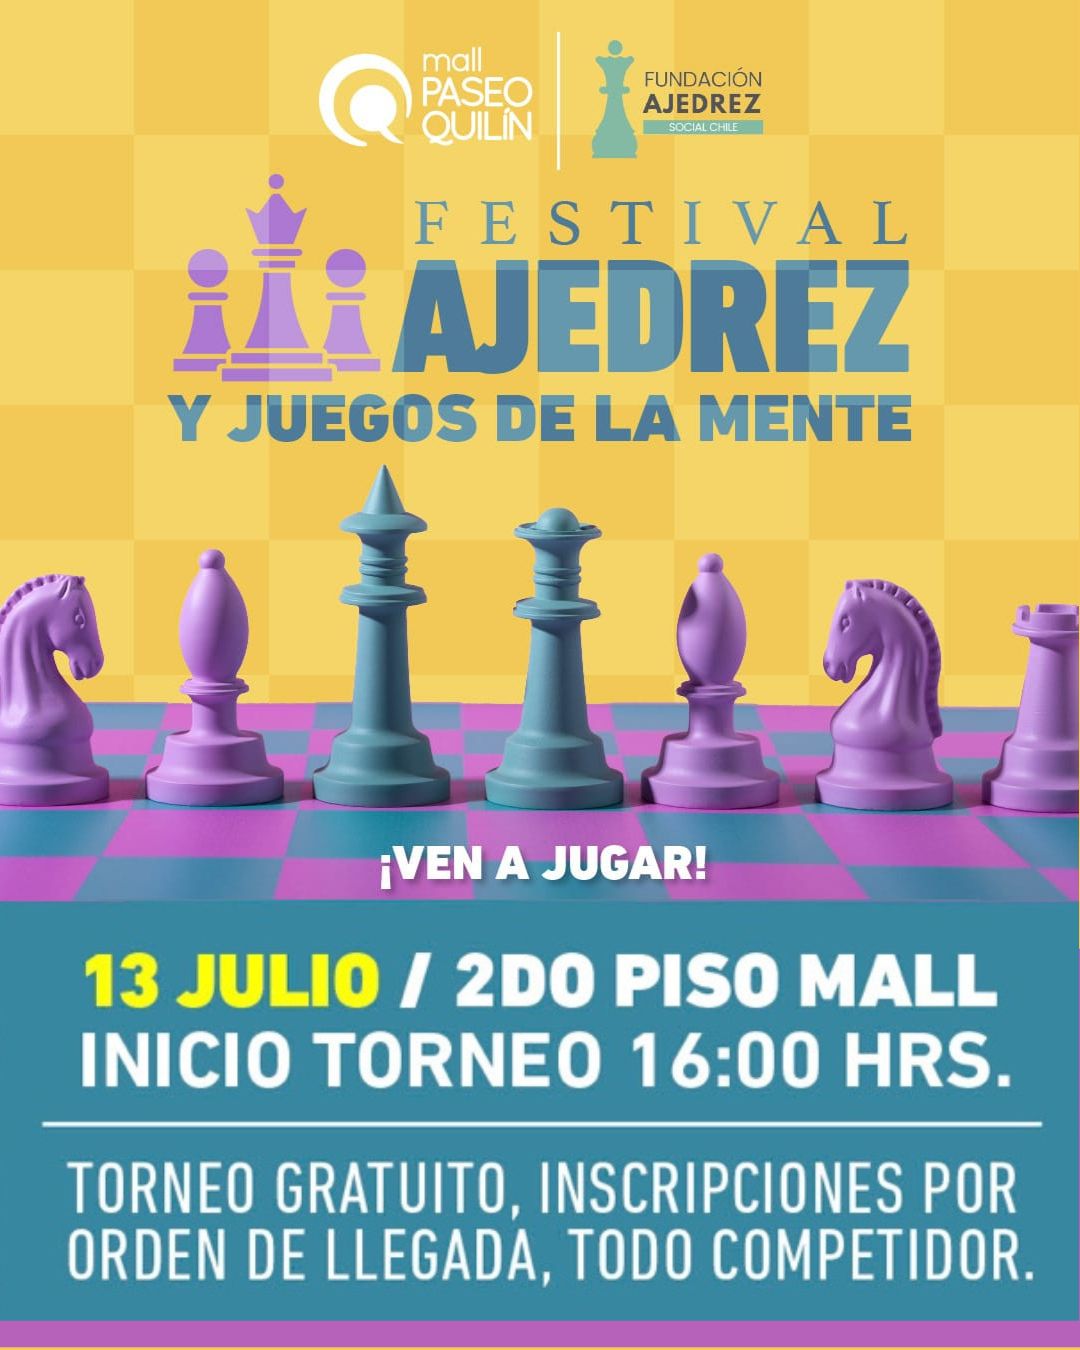 Ajedrez torneo en el mall Quilín, Peñalolén, Santiago de Chile